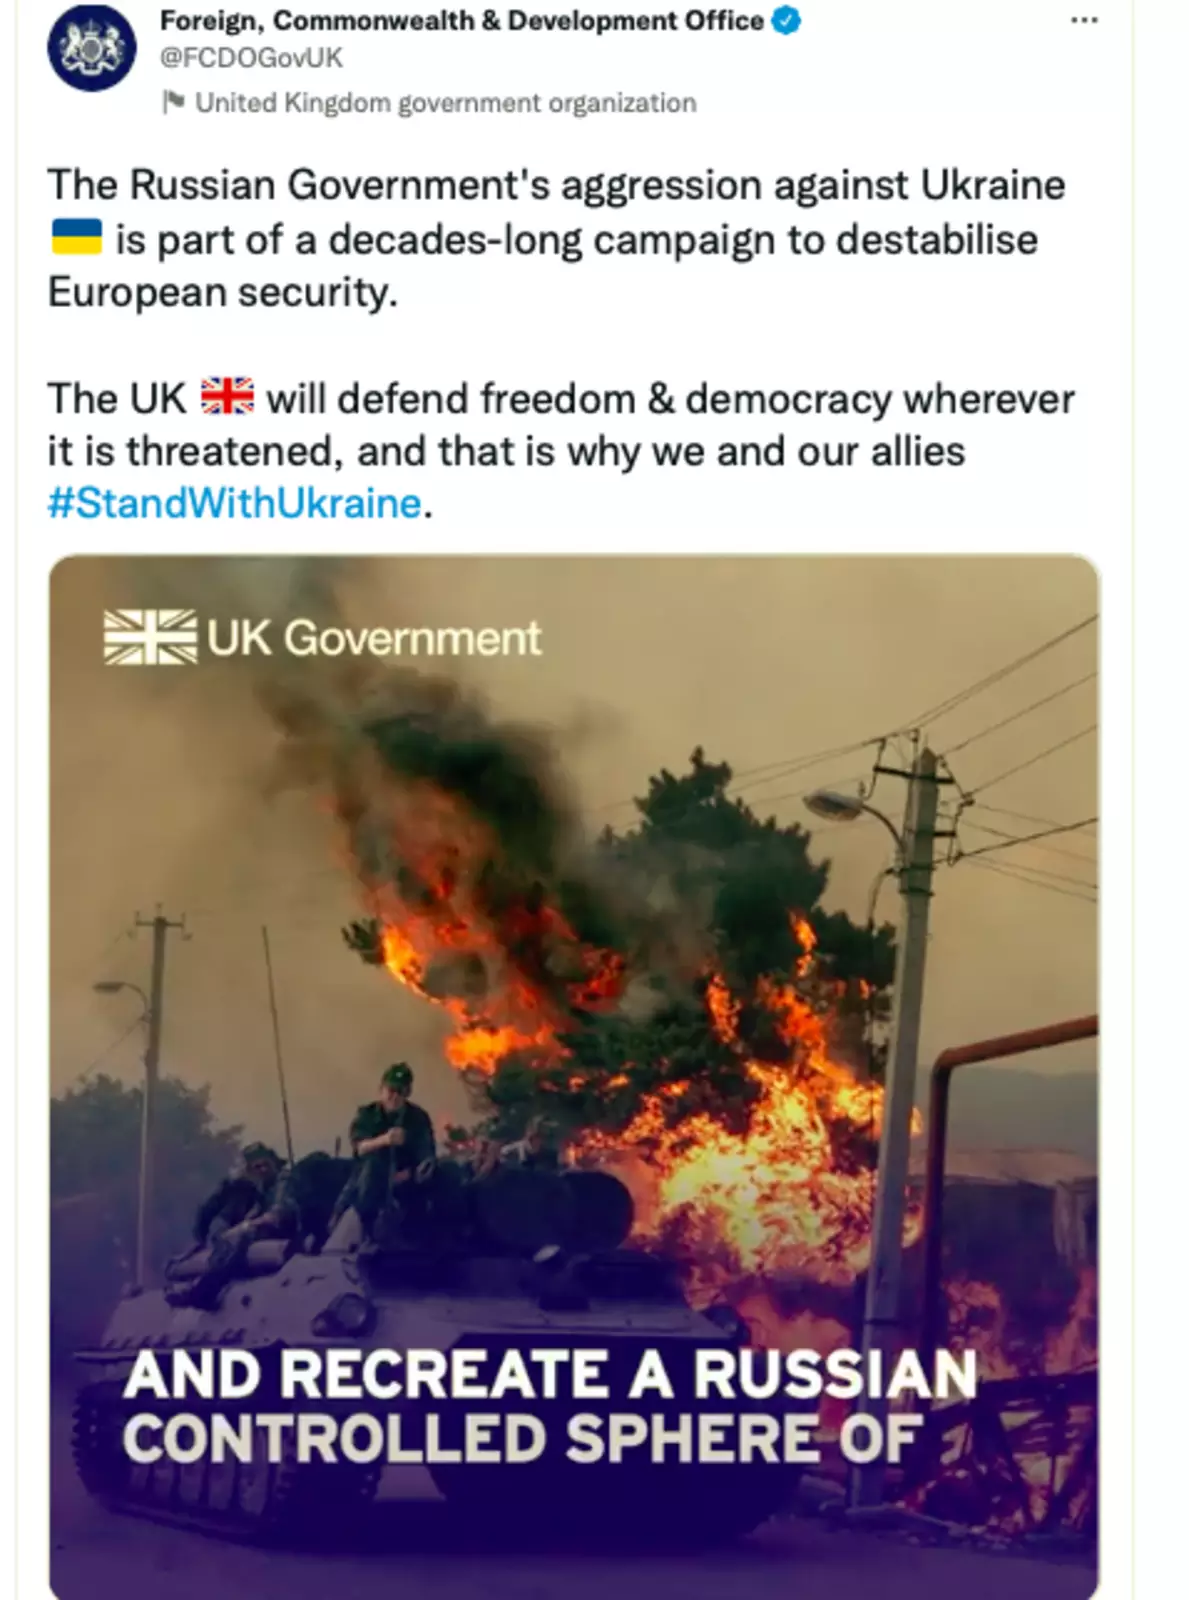 Агрессия российского правительства против Украины является частью многолетней кампании по дестабилизации европейской безопасности. Соединенное Королевство будет защищать свободу и демократию везде, где им угрожают, и именно поэтому мы и наши союзники #StandWithUkraine.